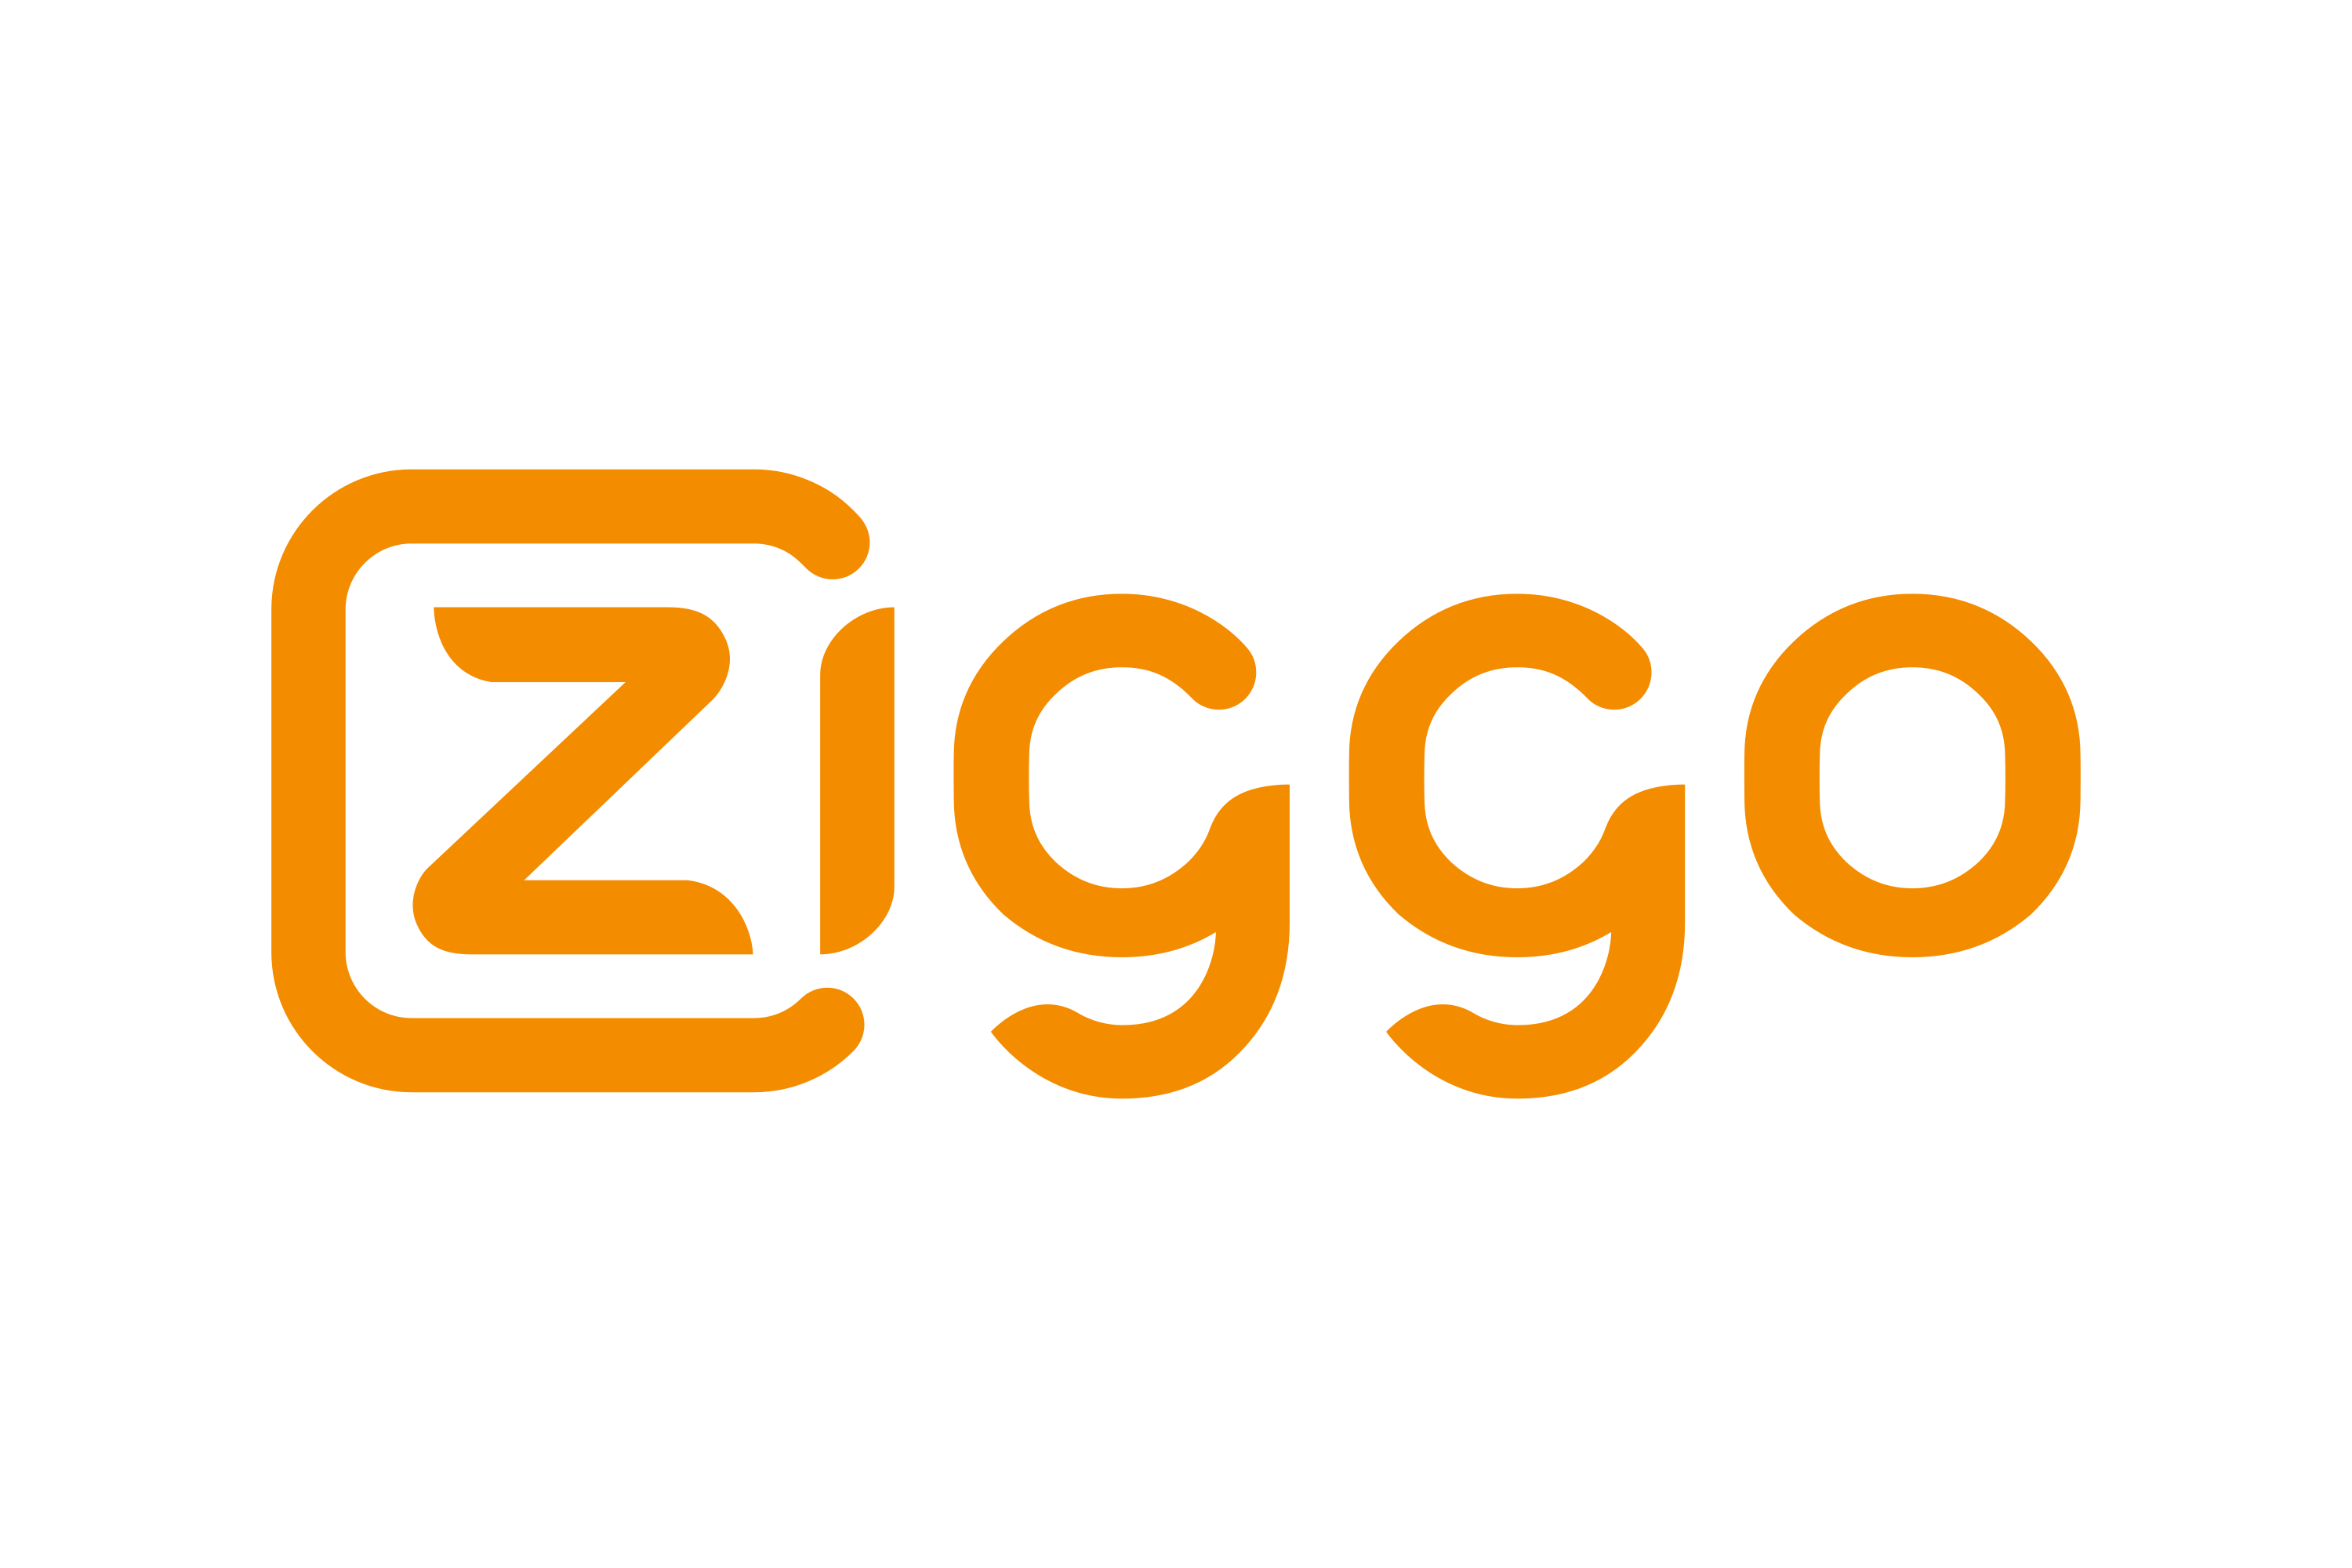 Download Ziggo Logo in SVG Vector or PNG File Format - Logo.wine